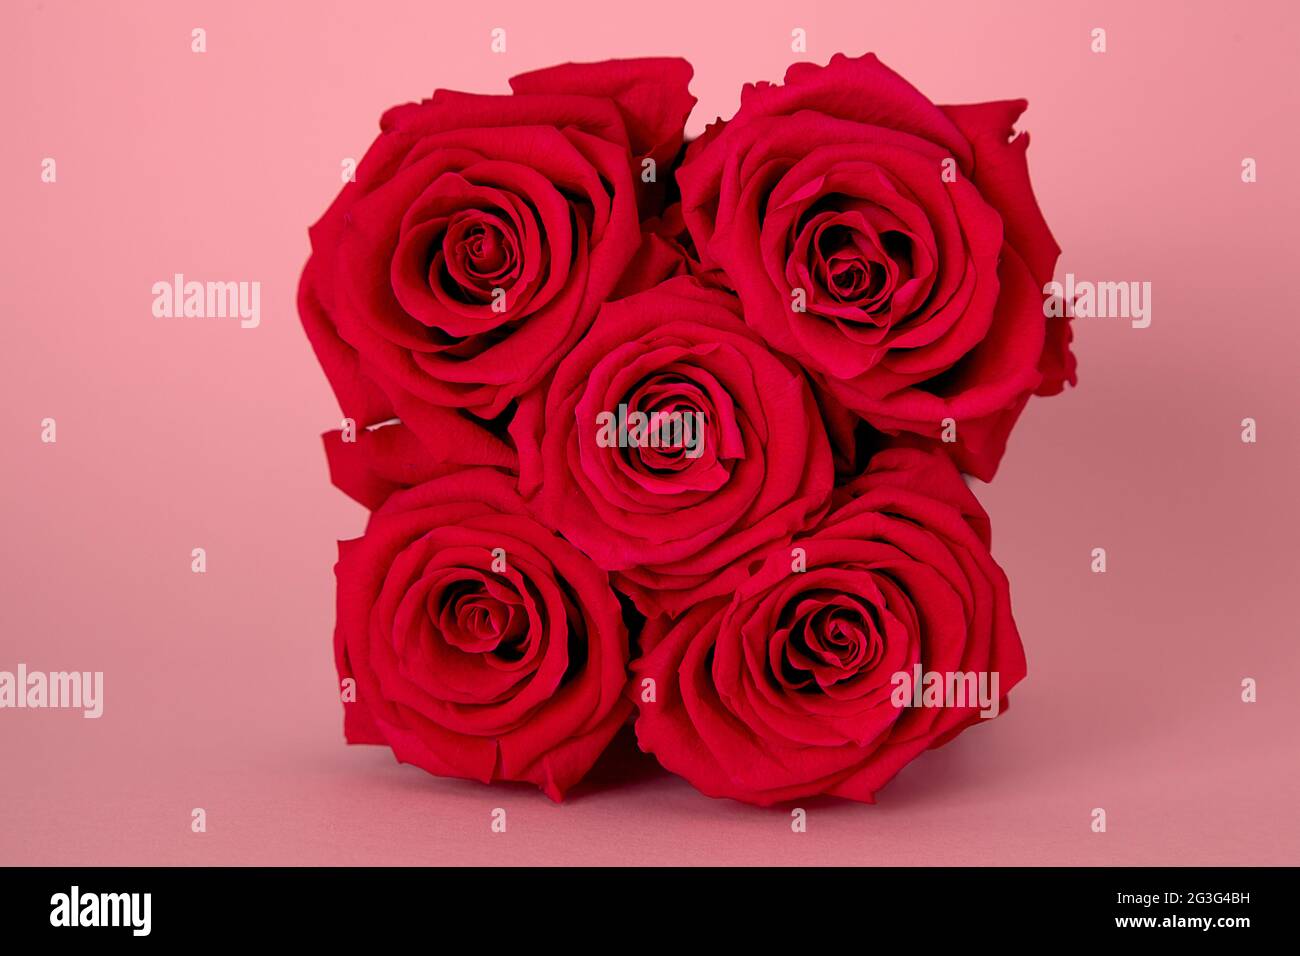 Rote infinity Rosen auf dem pinken Hintergrund Stock Photo